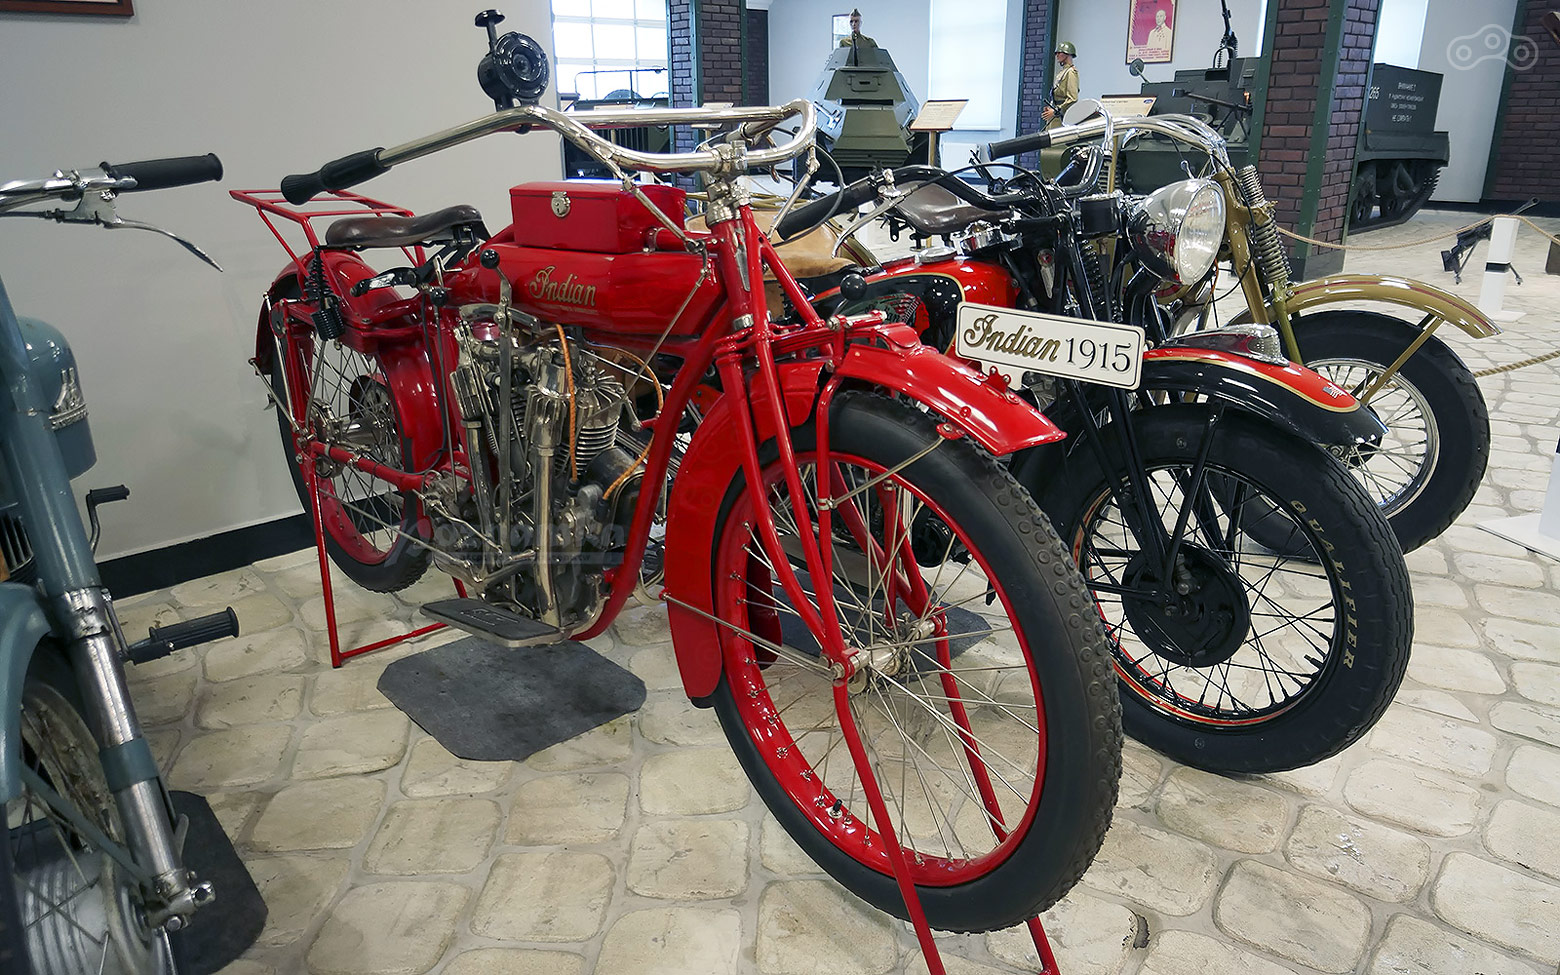 Мотоцикл индиан выпуска 2015 года представленный в Музее Техники Вадима Задорожного. 